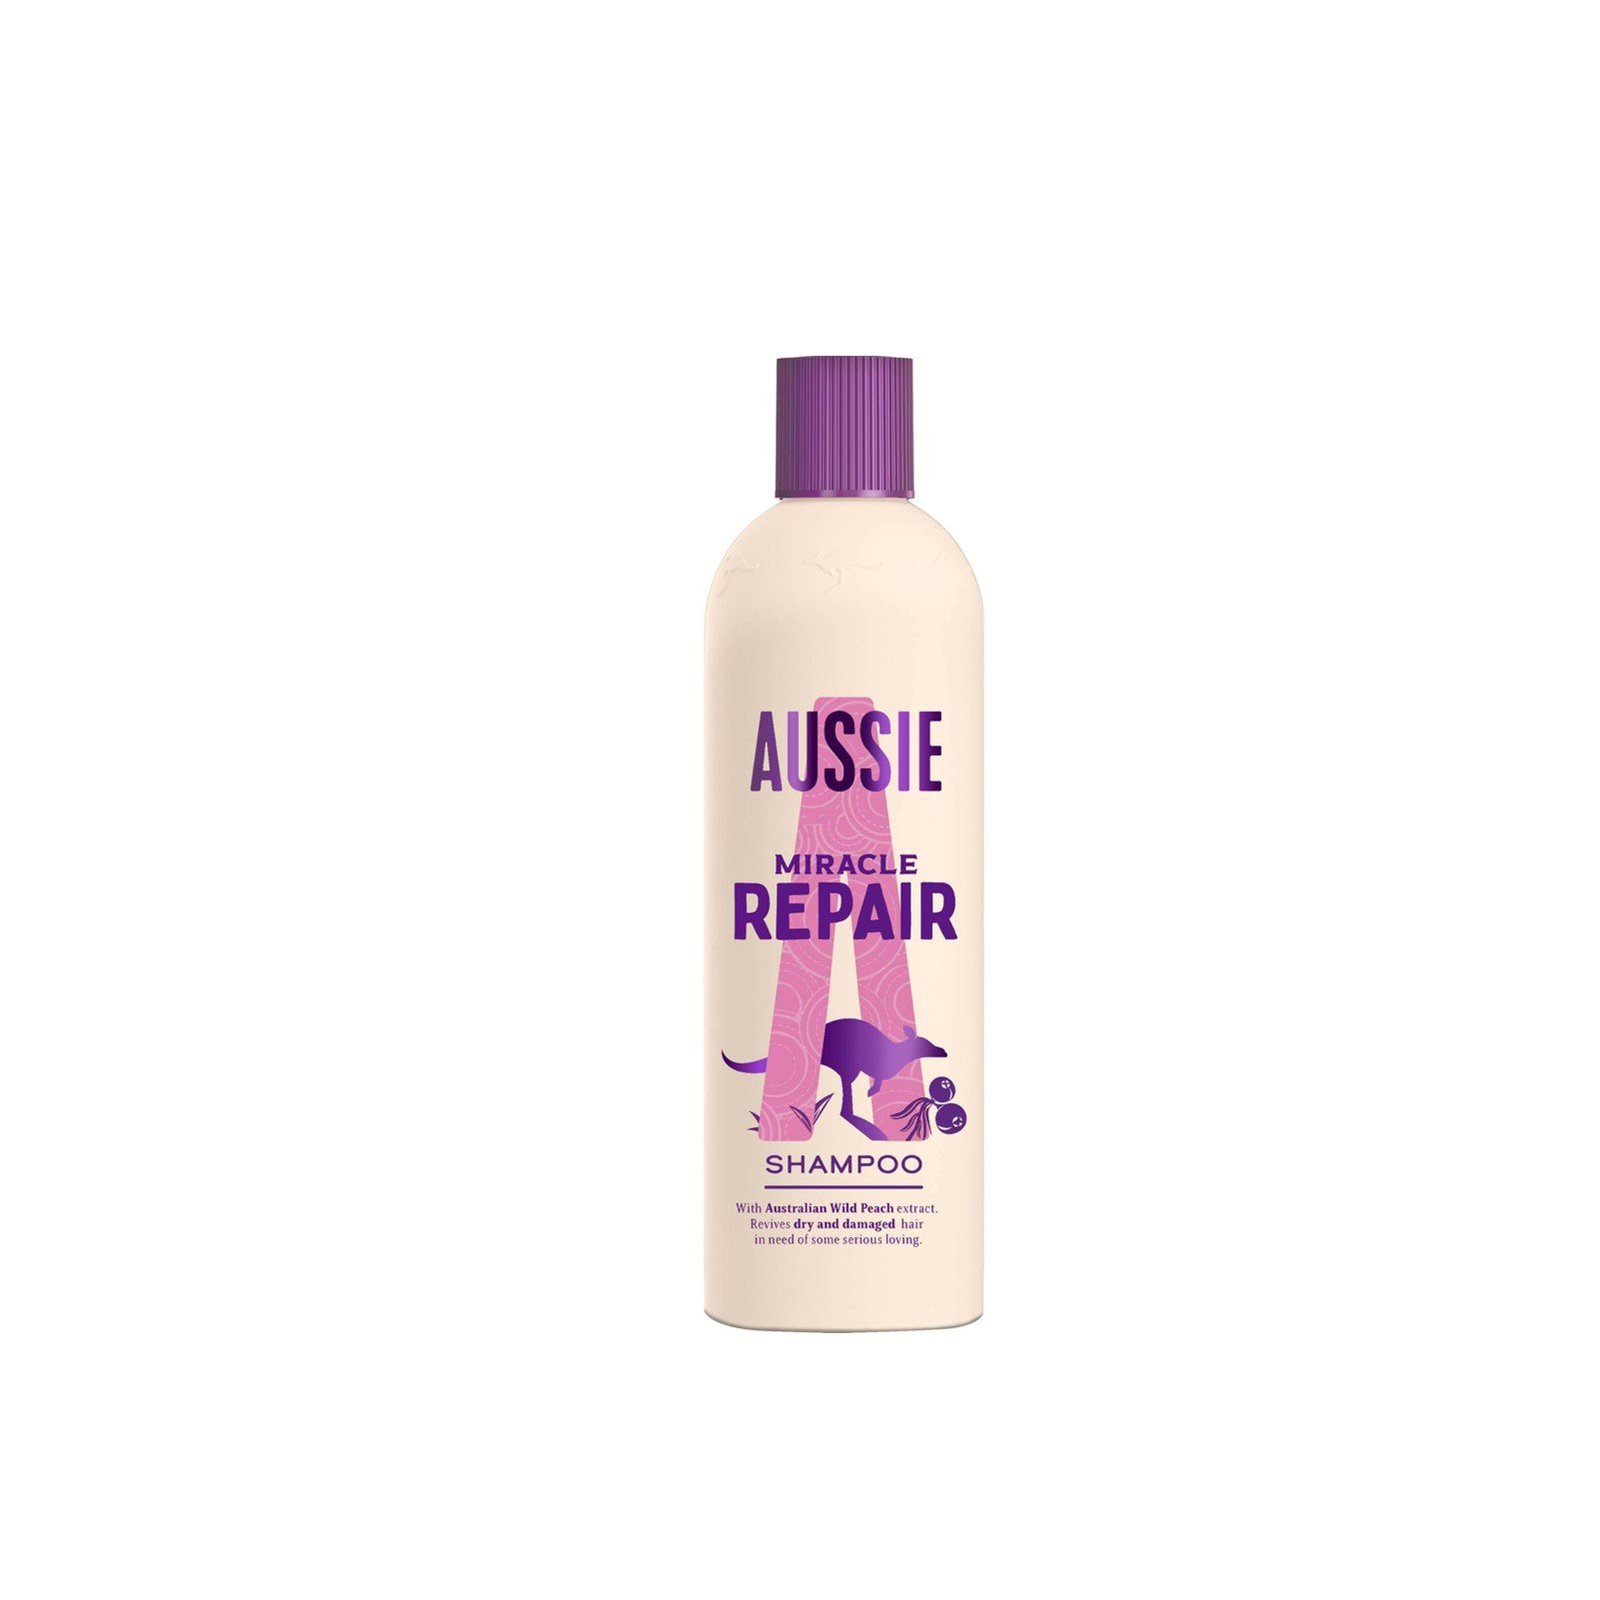 Aussie Repair Miracle Shampoo 300ml (10.14fl oz)